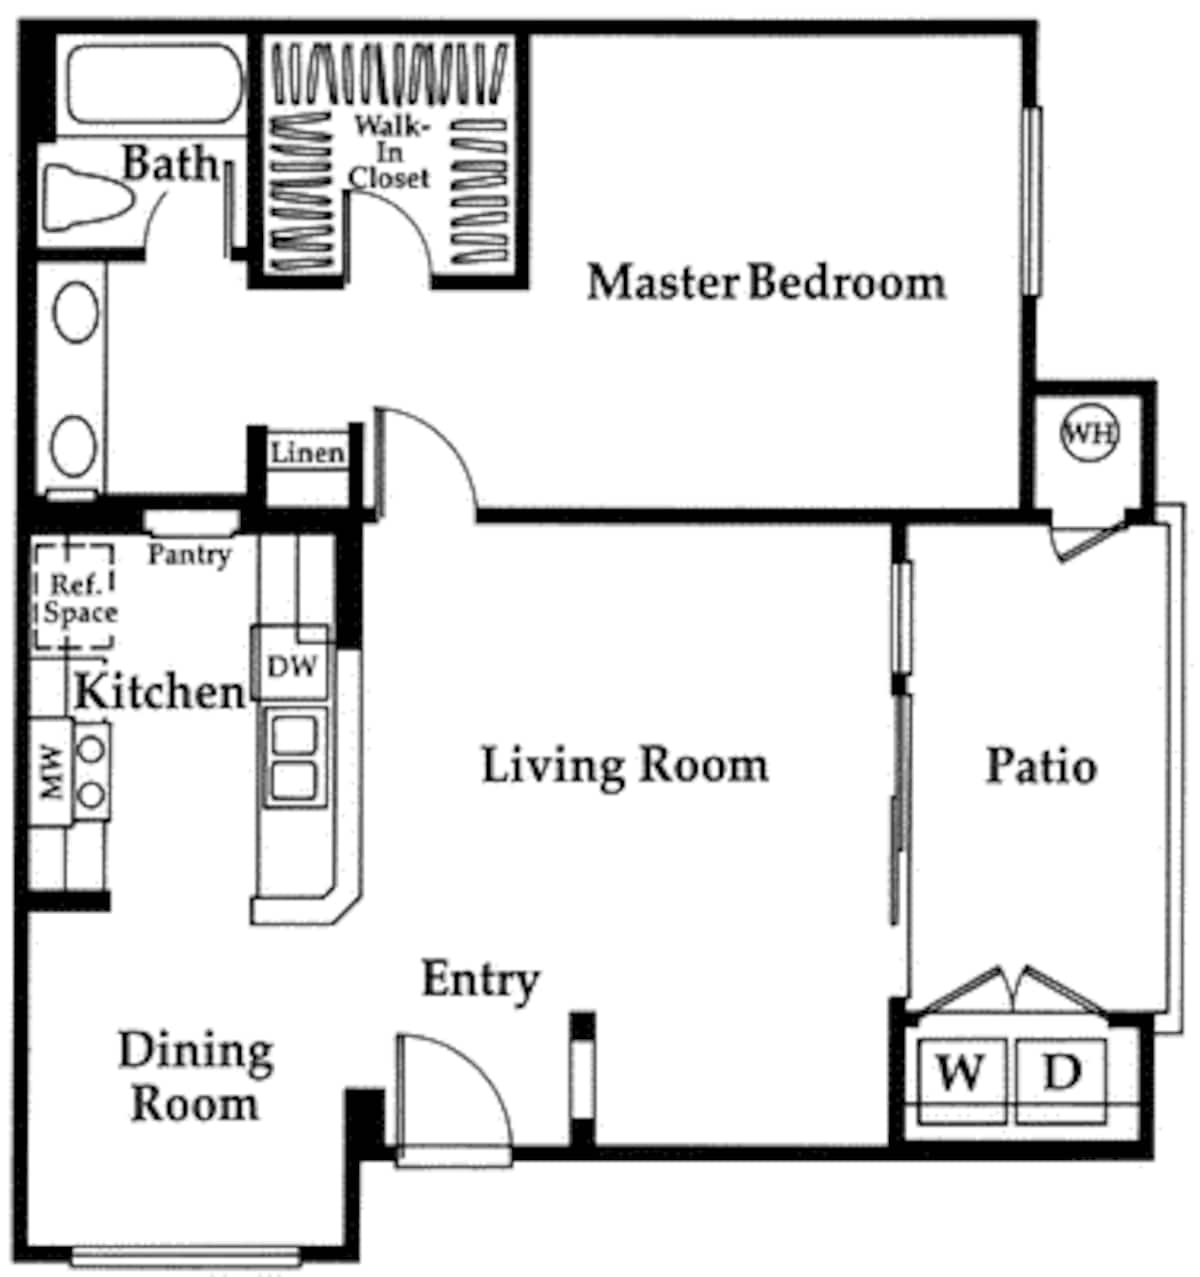 Floorplan diagram for Crescent, showing 1 bedroom